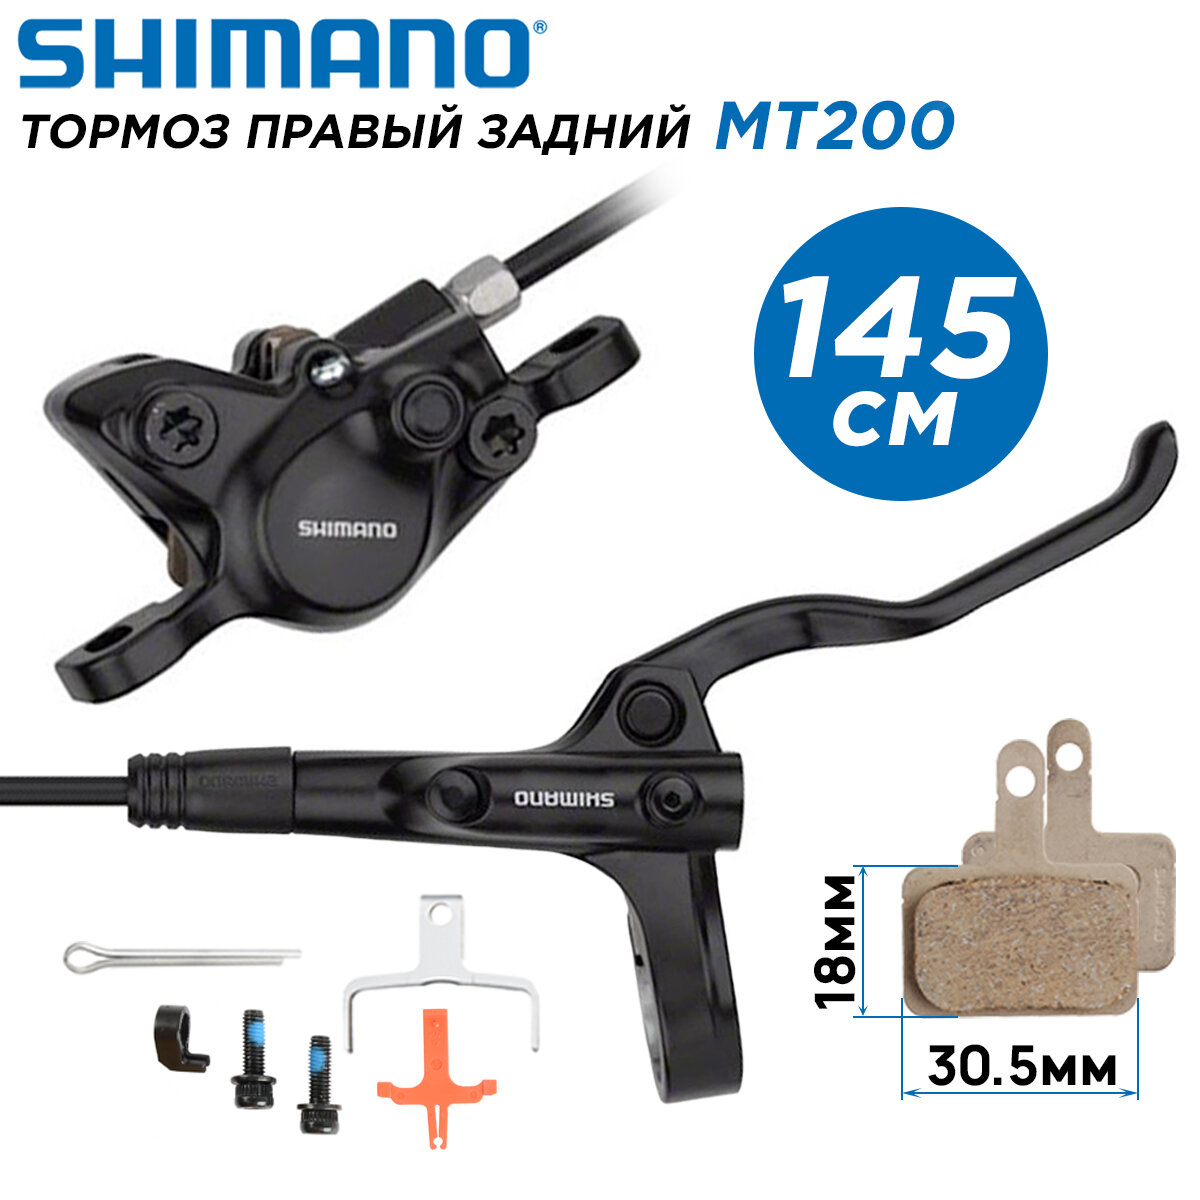 Тормоз дисковый задний правый, гидравлический Shimano MT200 ручки BL-MT200 / калипер BR-MT200 длина гидролинии 1450мм, поставка ОЕМ